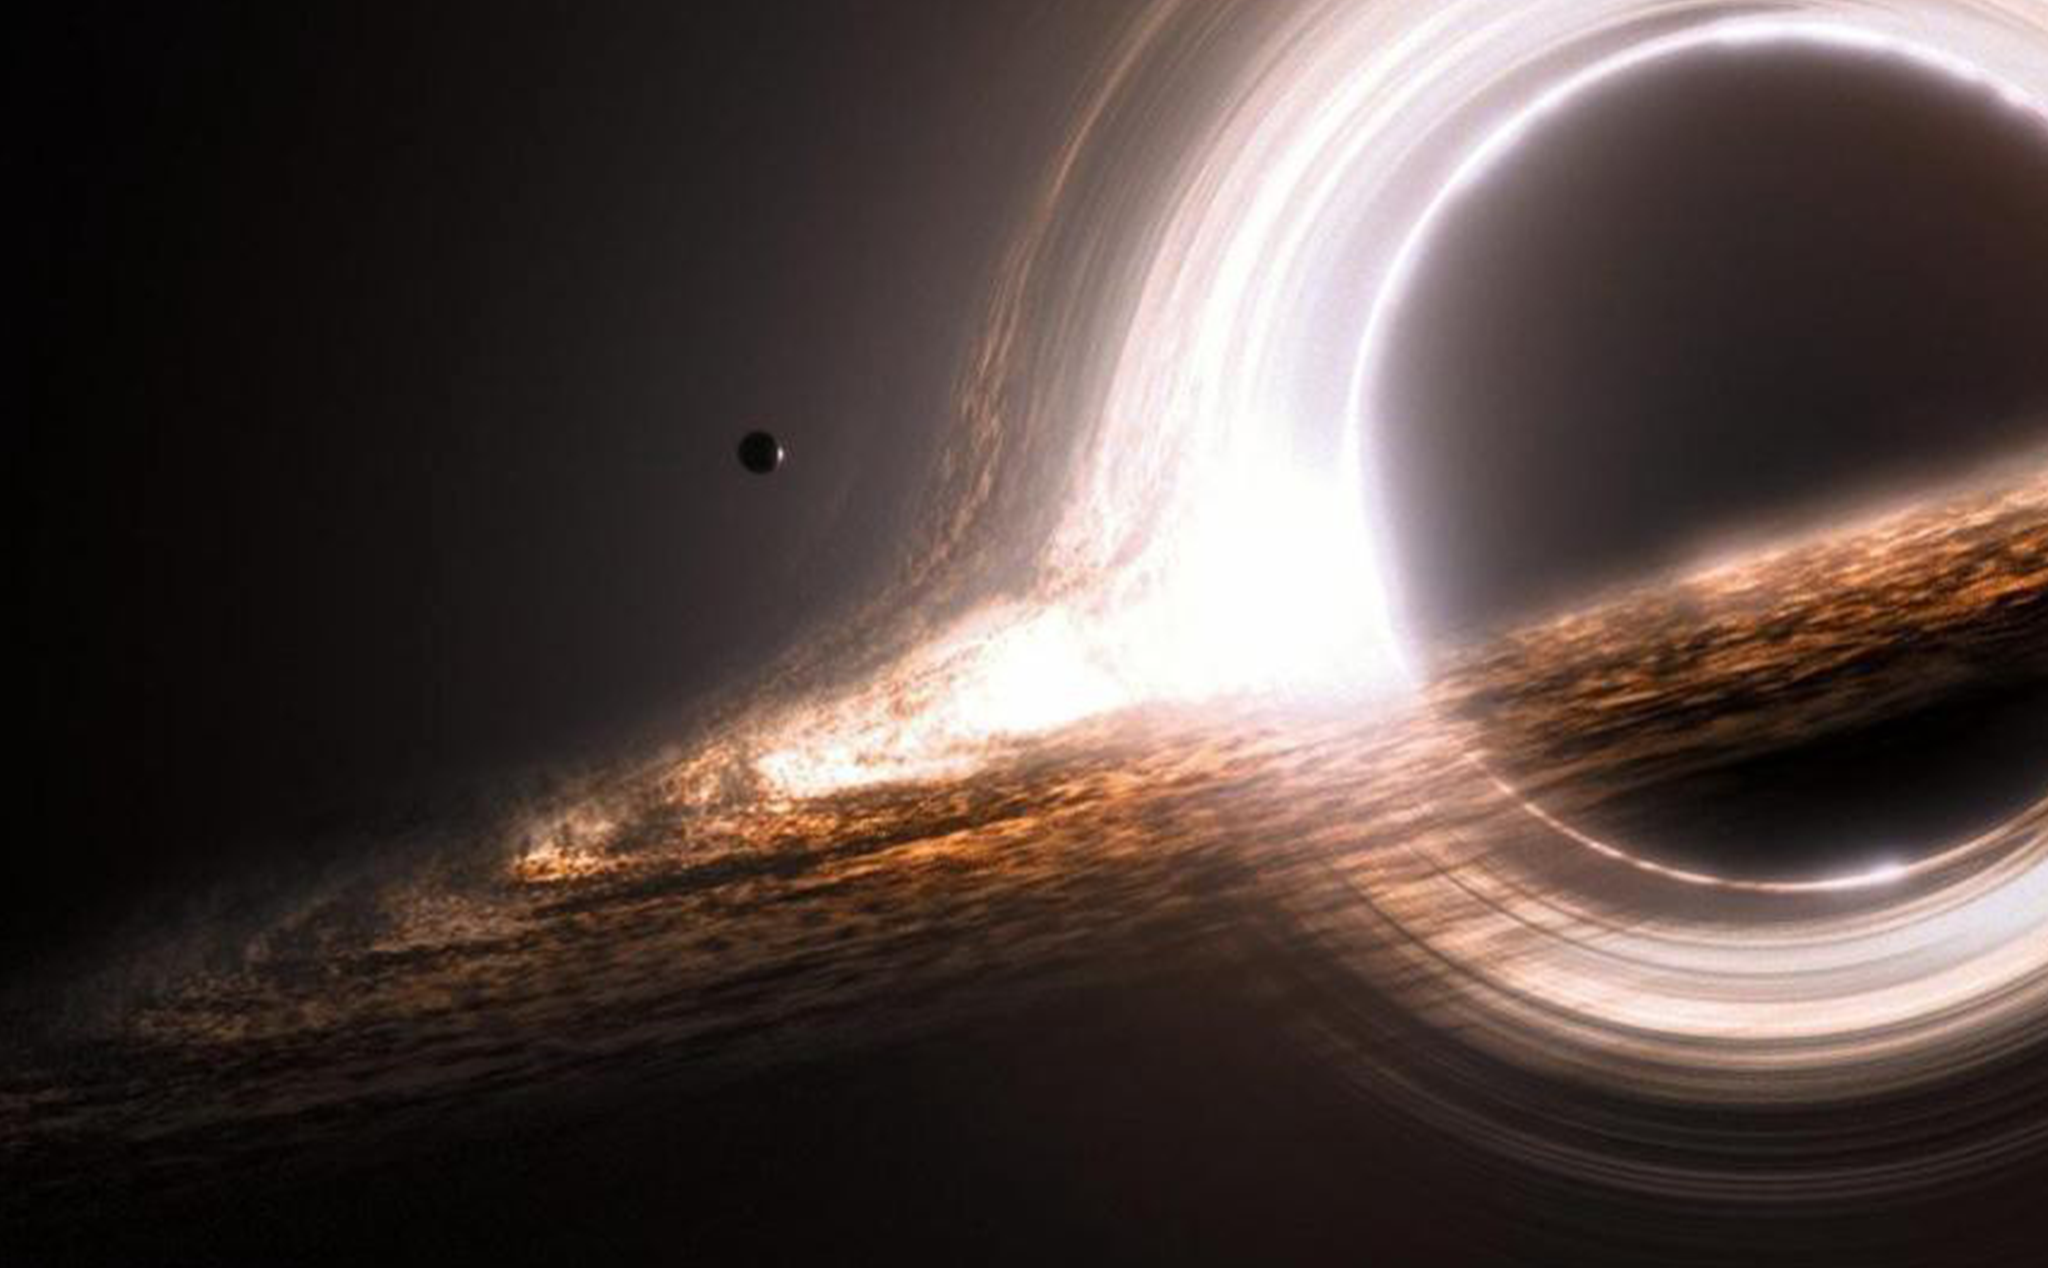 Bạn có tin vào khả năng của loại hố đen không hút vật chất vào? Hãy tự mình tìm hiểu và khám phá những bí mật của chúng tôi trong không gian vô tận. Chắc chắn sẽ có nhiều điều bất ngờ đang chờ đón bạn.